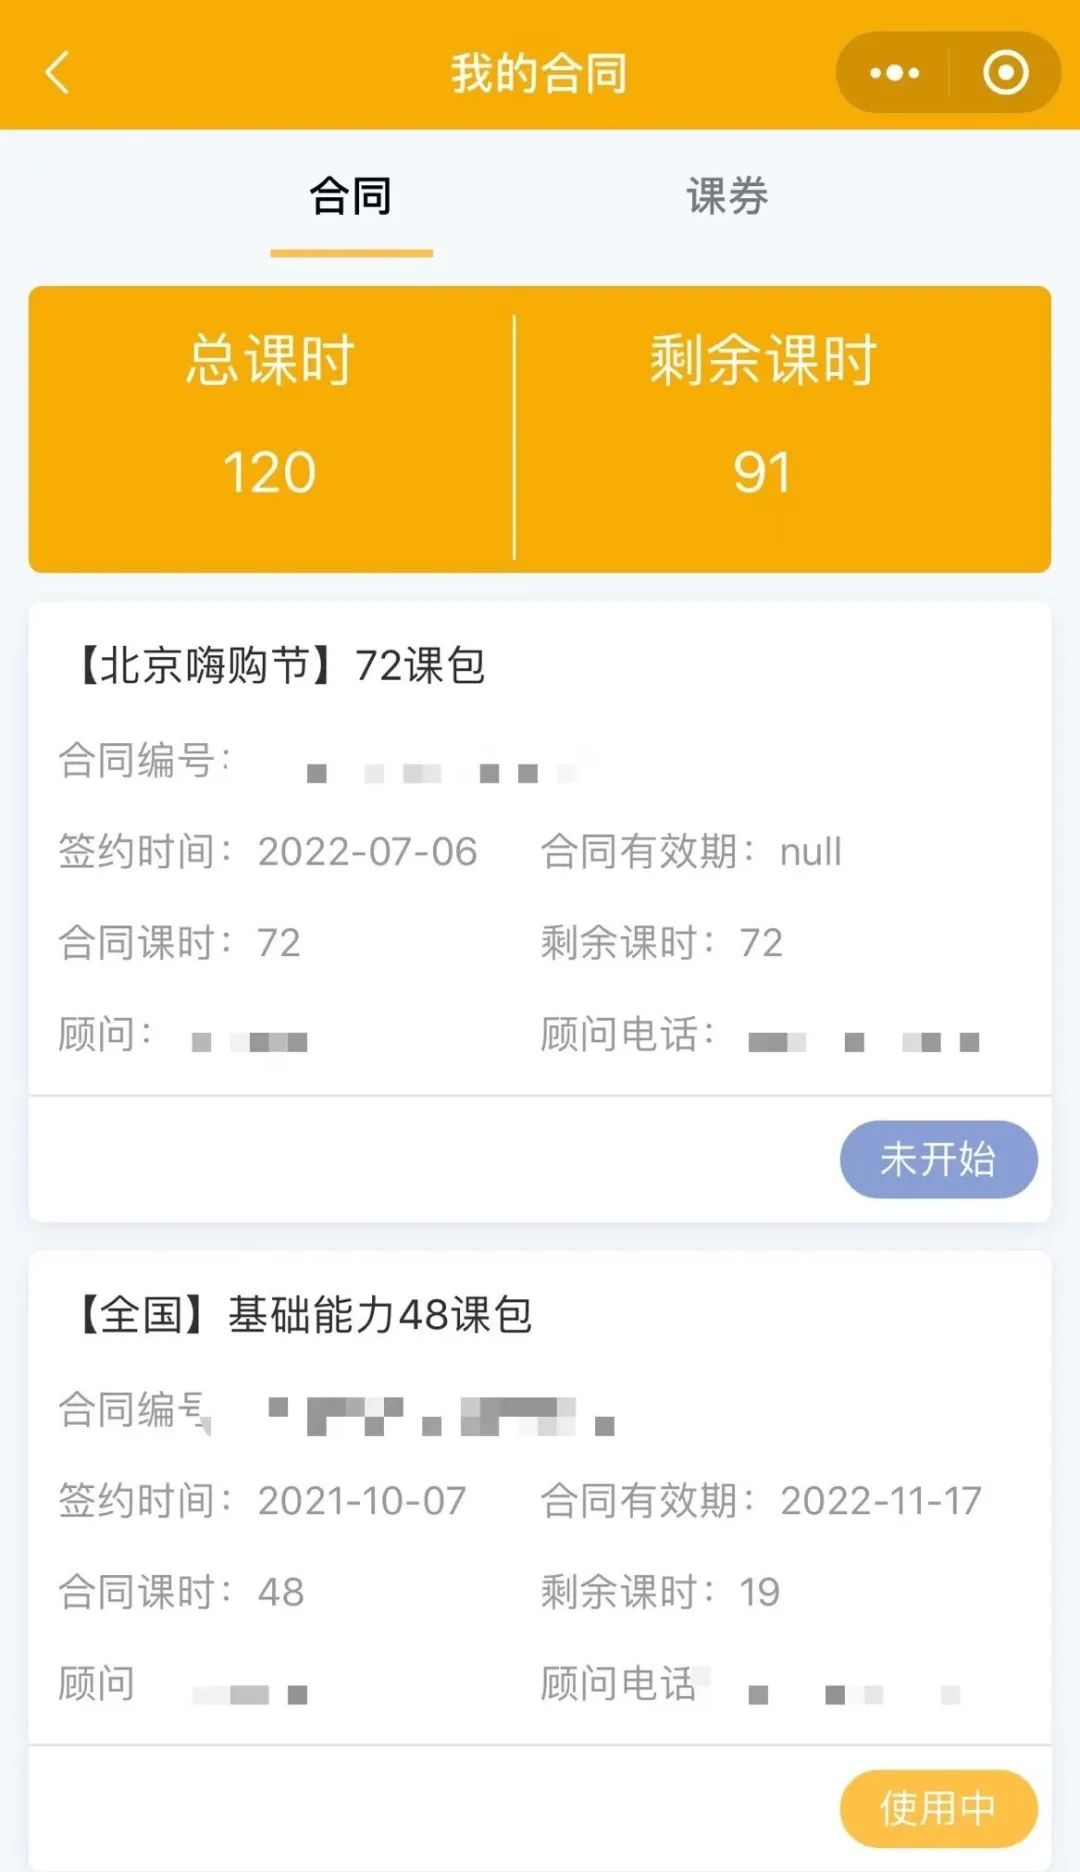 《im钱包app官方下》七田真早教机构7月促销，8月闭店，上百万的预付费能要回来么？